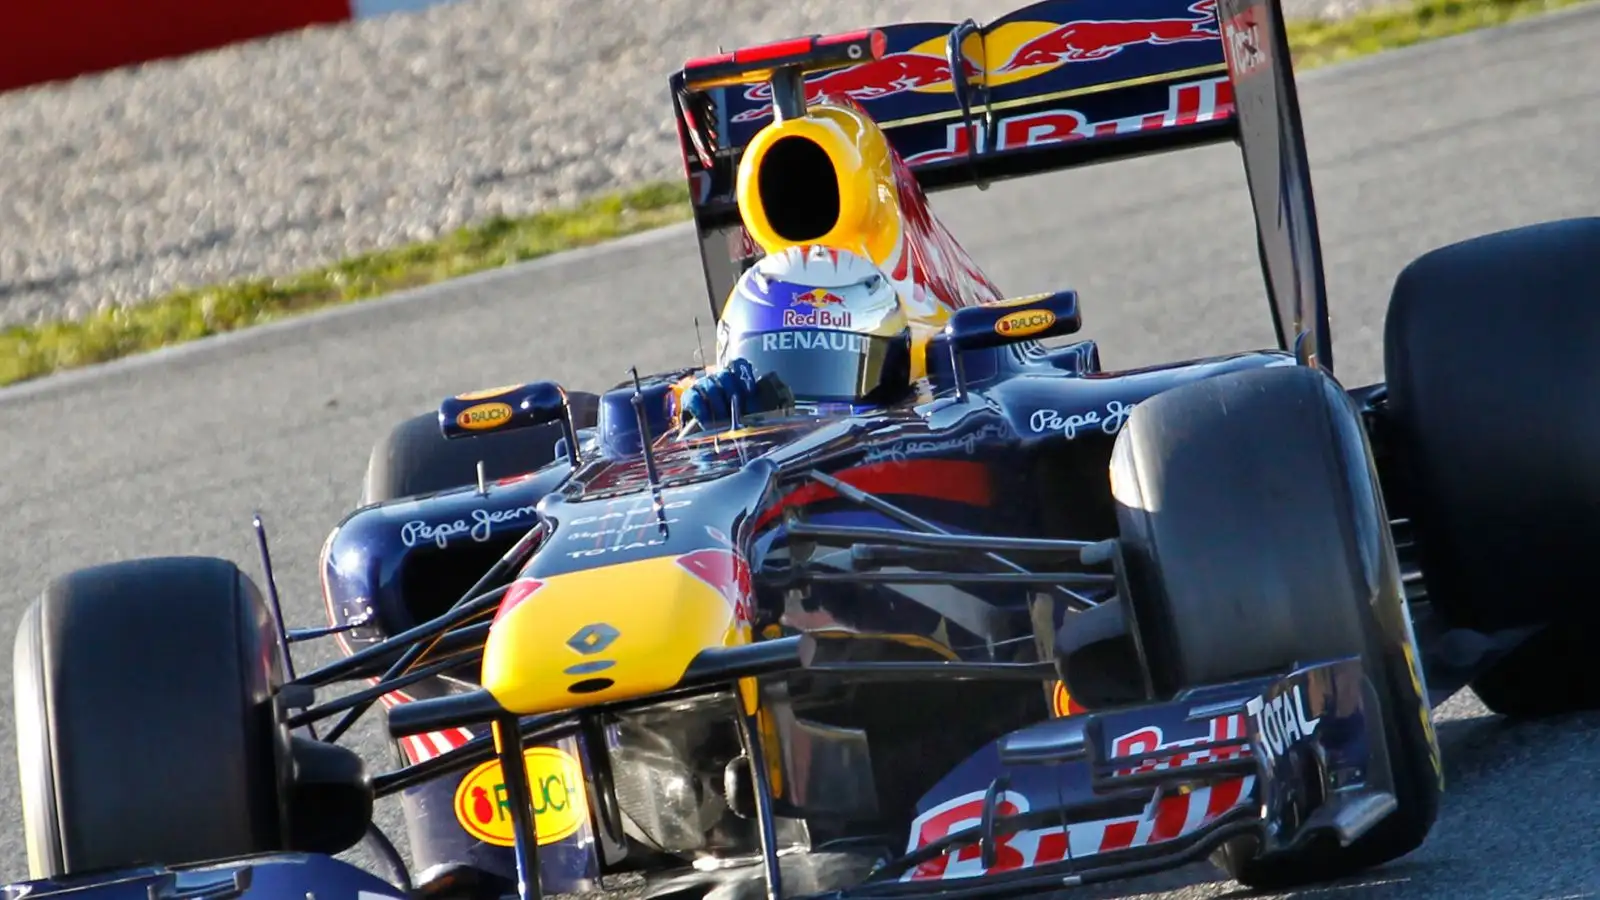 Sebastian Vettel drives the title-winning Red Bull RB7 car in F1 pre-season testing in Spain. Barcelona, 2011.